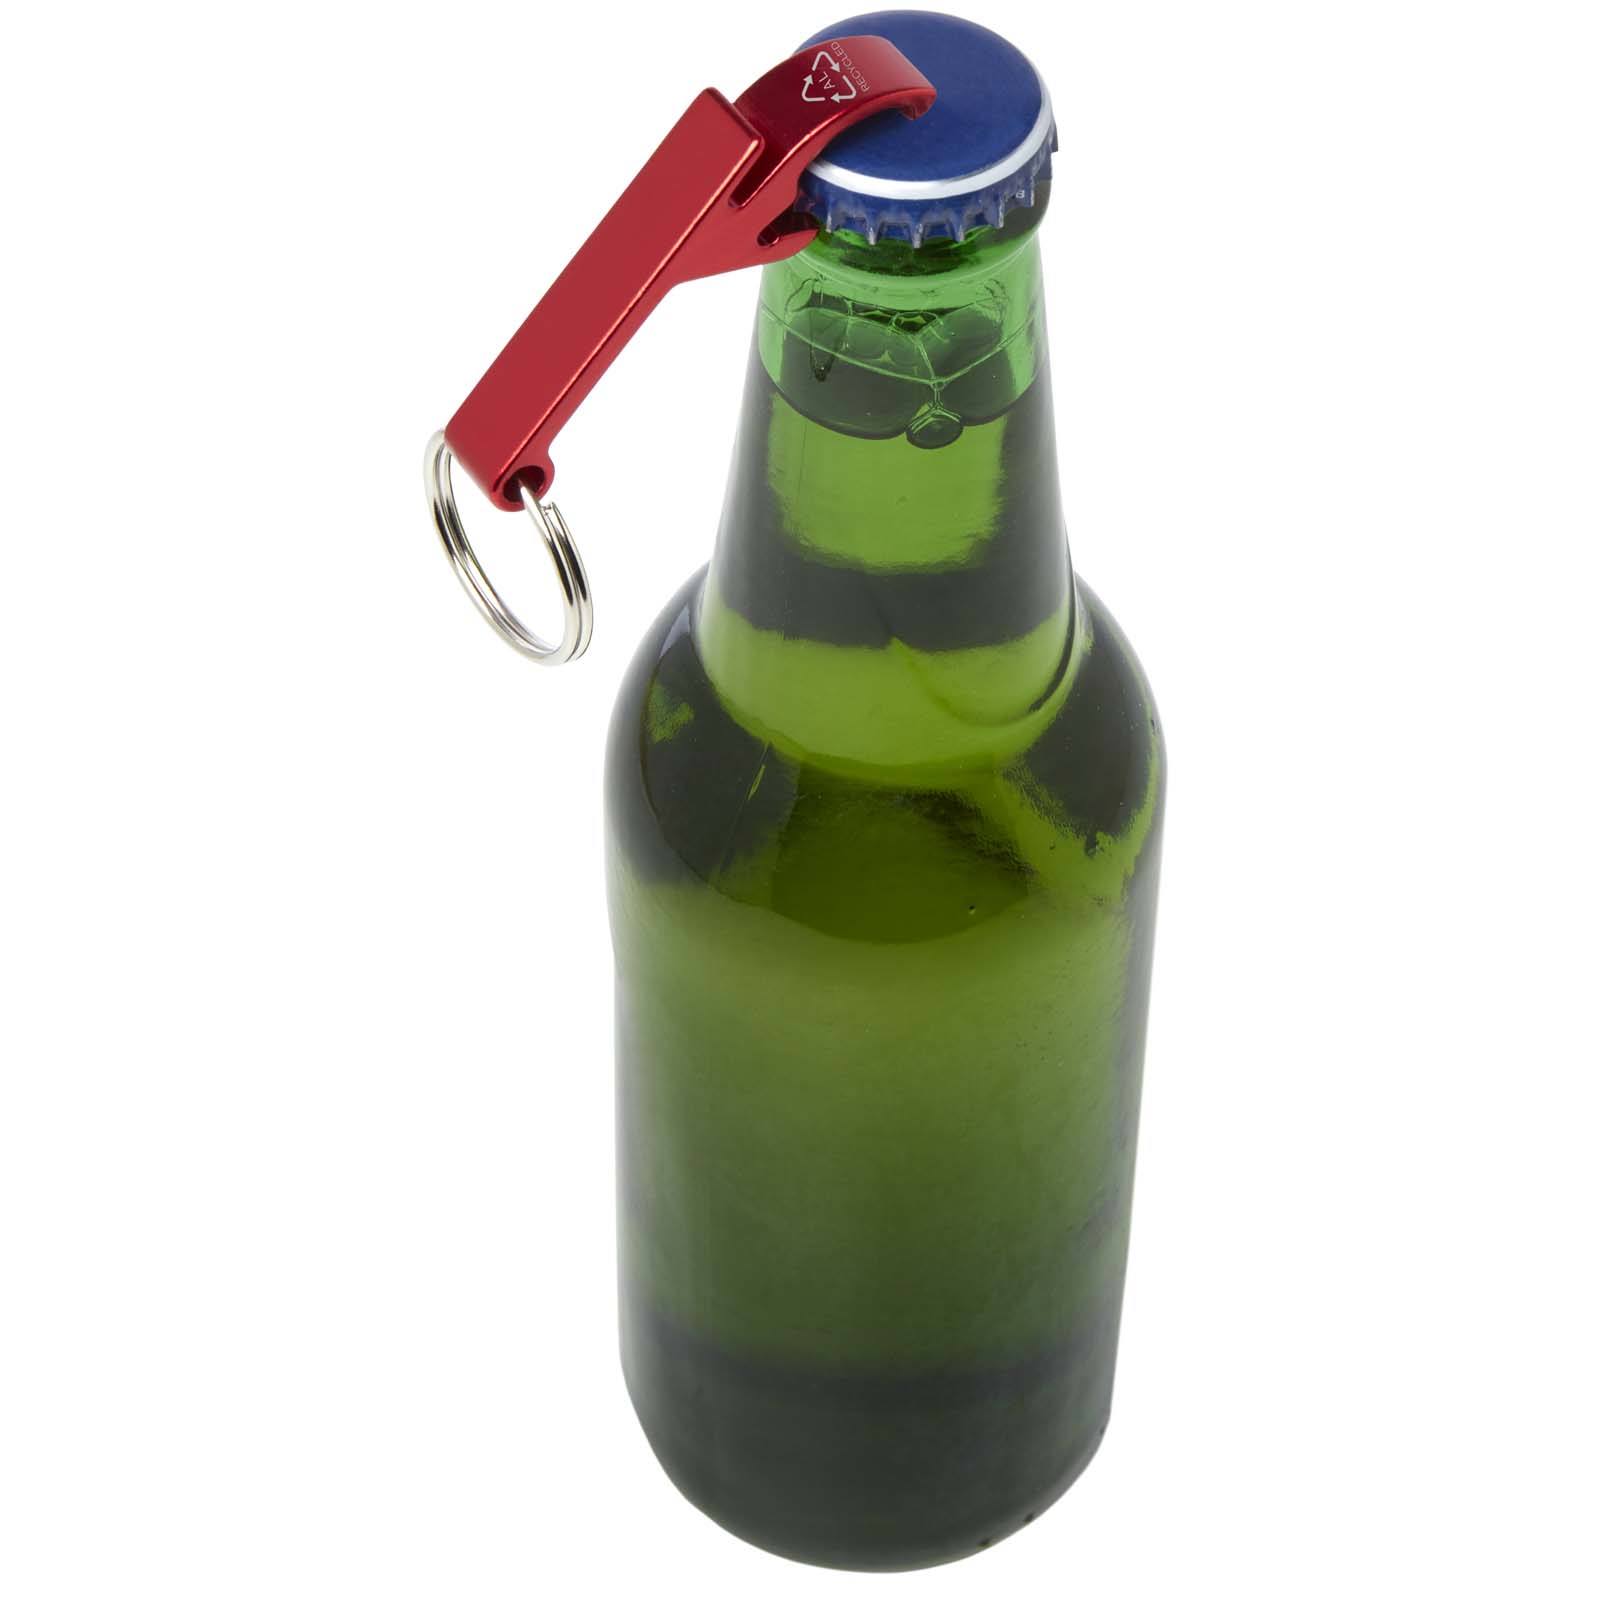 Porte-clés publicitaires - Ouvre-bouteille et canette Tao en aluminium recyclé certifié RCS avec porte-clés  - 2